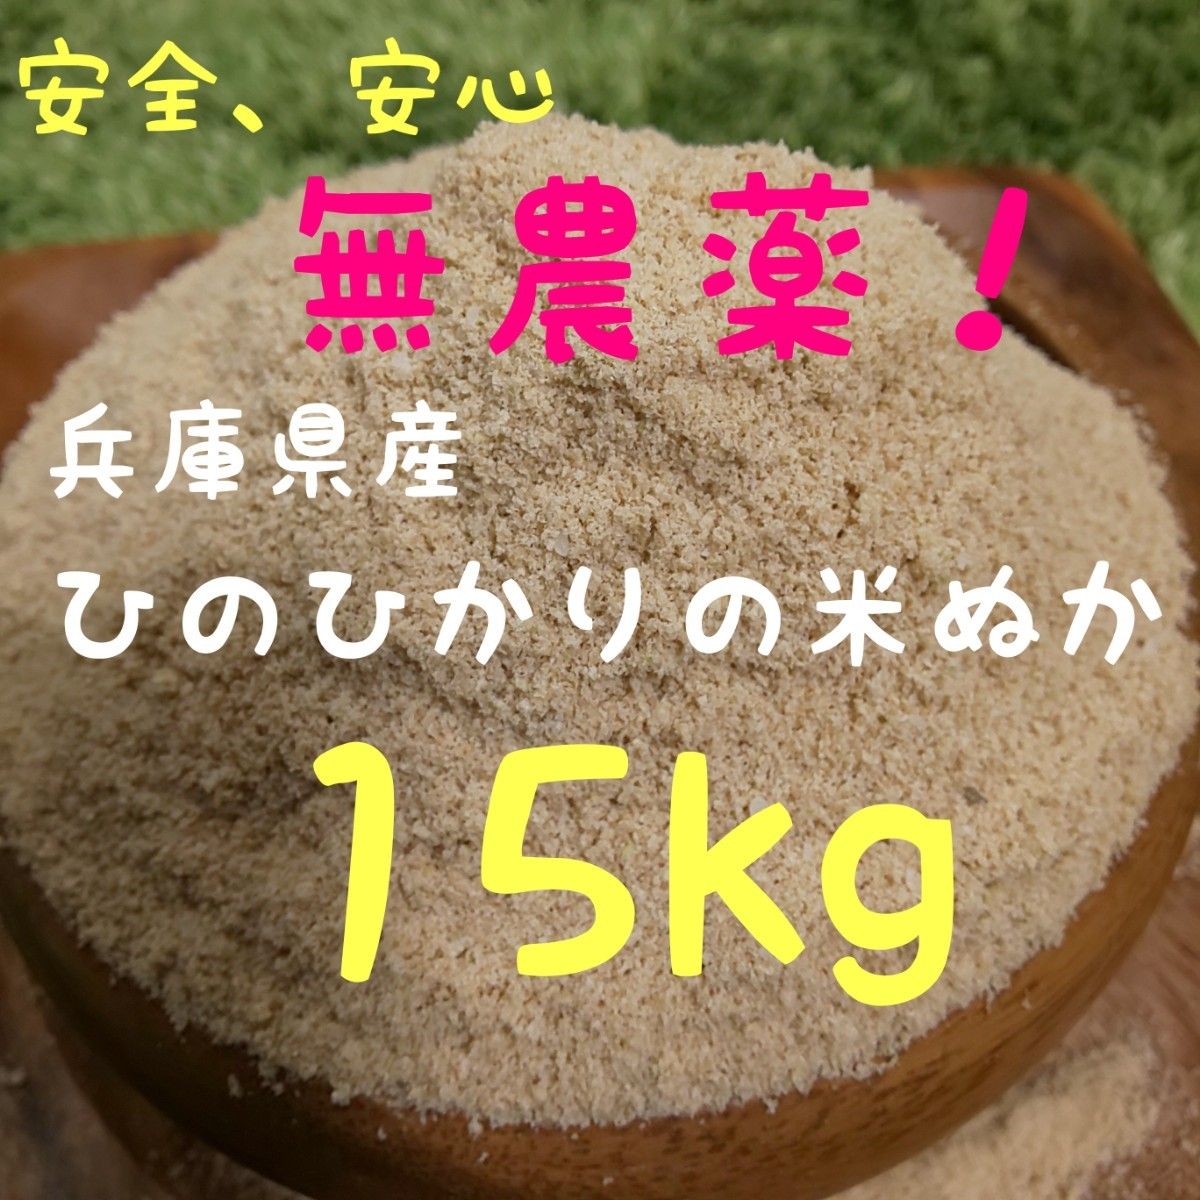 自然栽培 農薬不使用 化学肥料不使用 無除草剤 食用可能 米ぬか 米糠